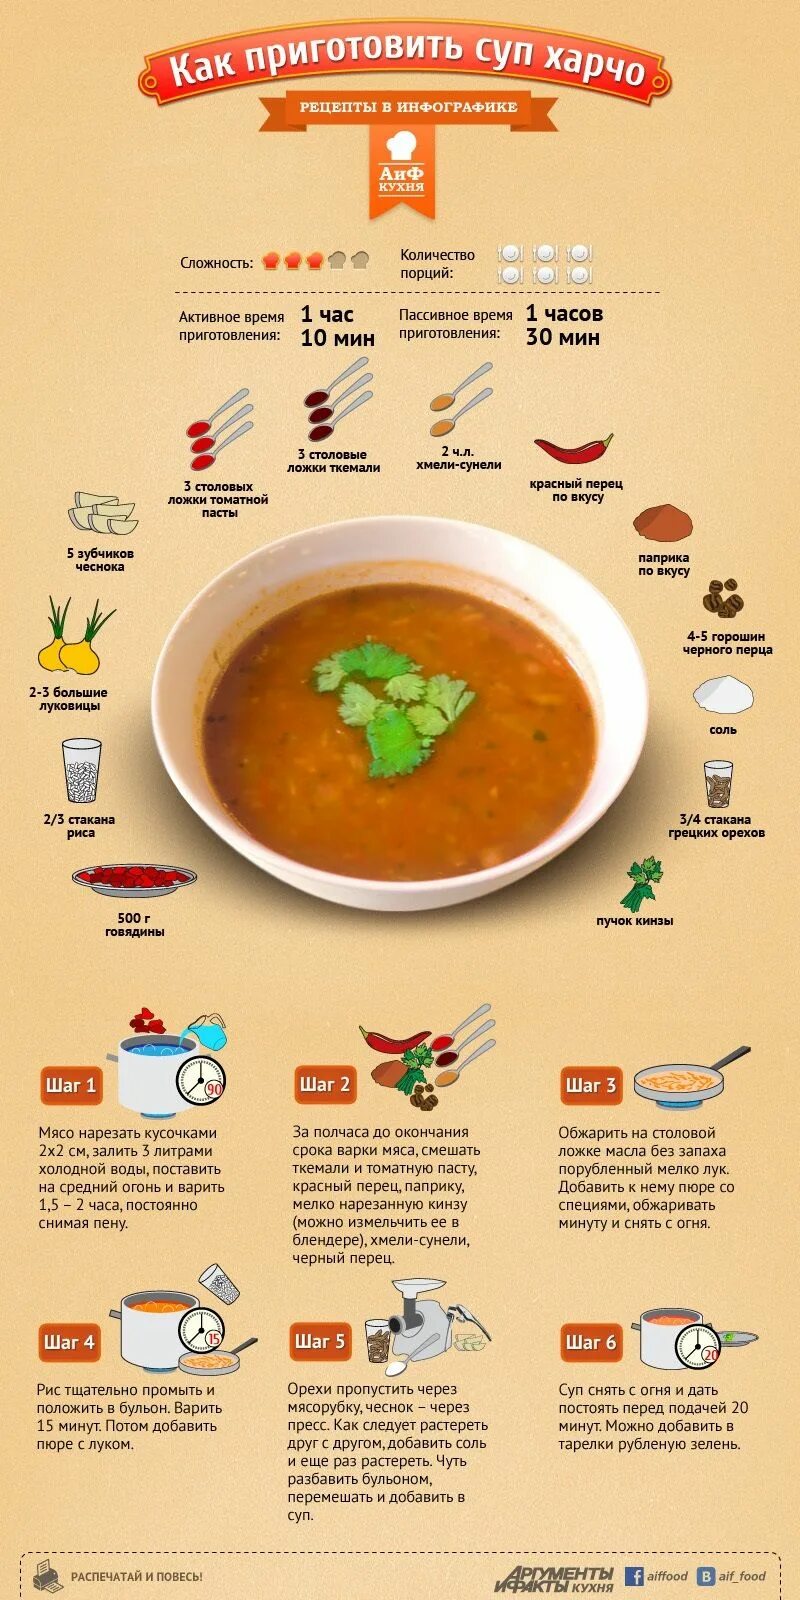 Харчо рис на литр воды. Схема приготовления супа харчо. Рецептура супа харчо. Рецепты в картинках. Инфографика суп.